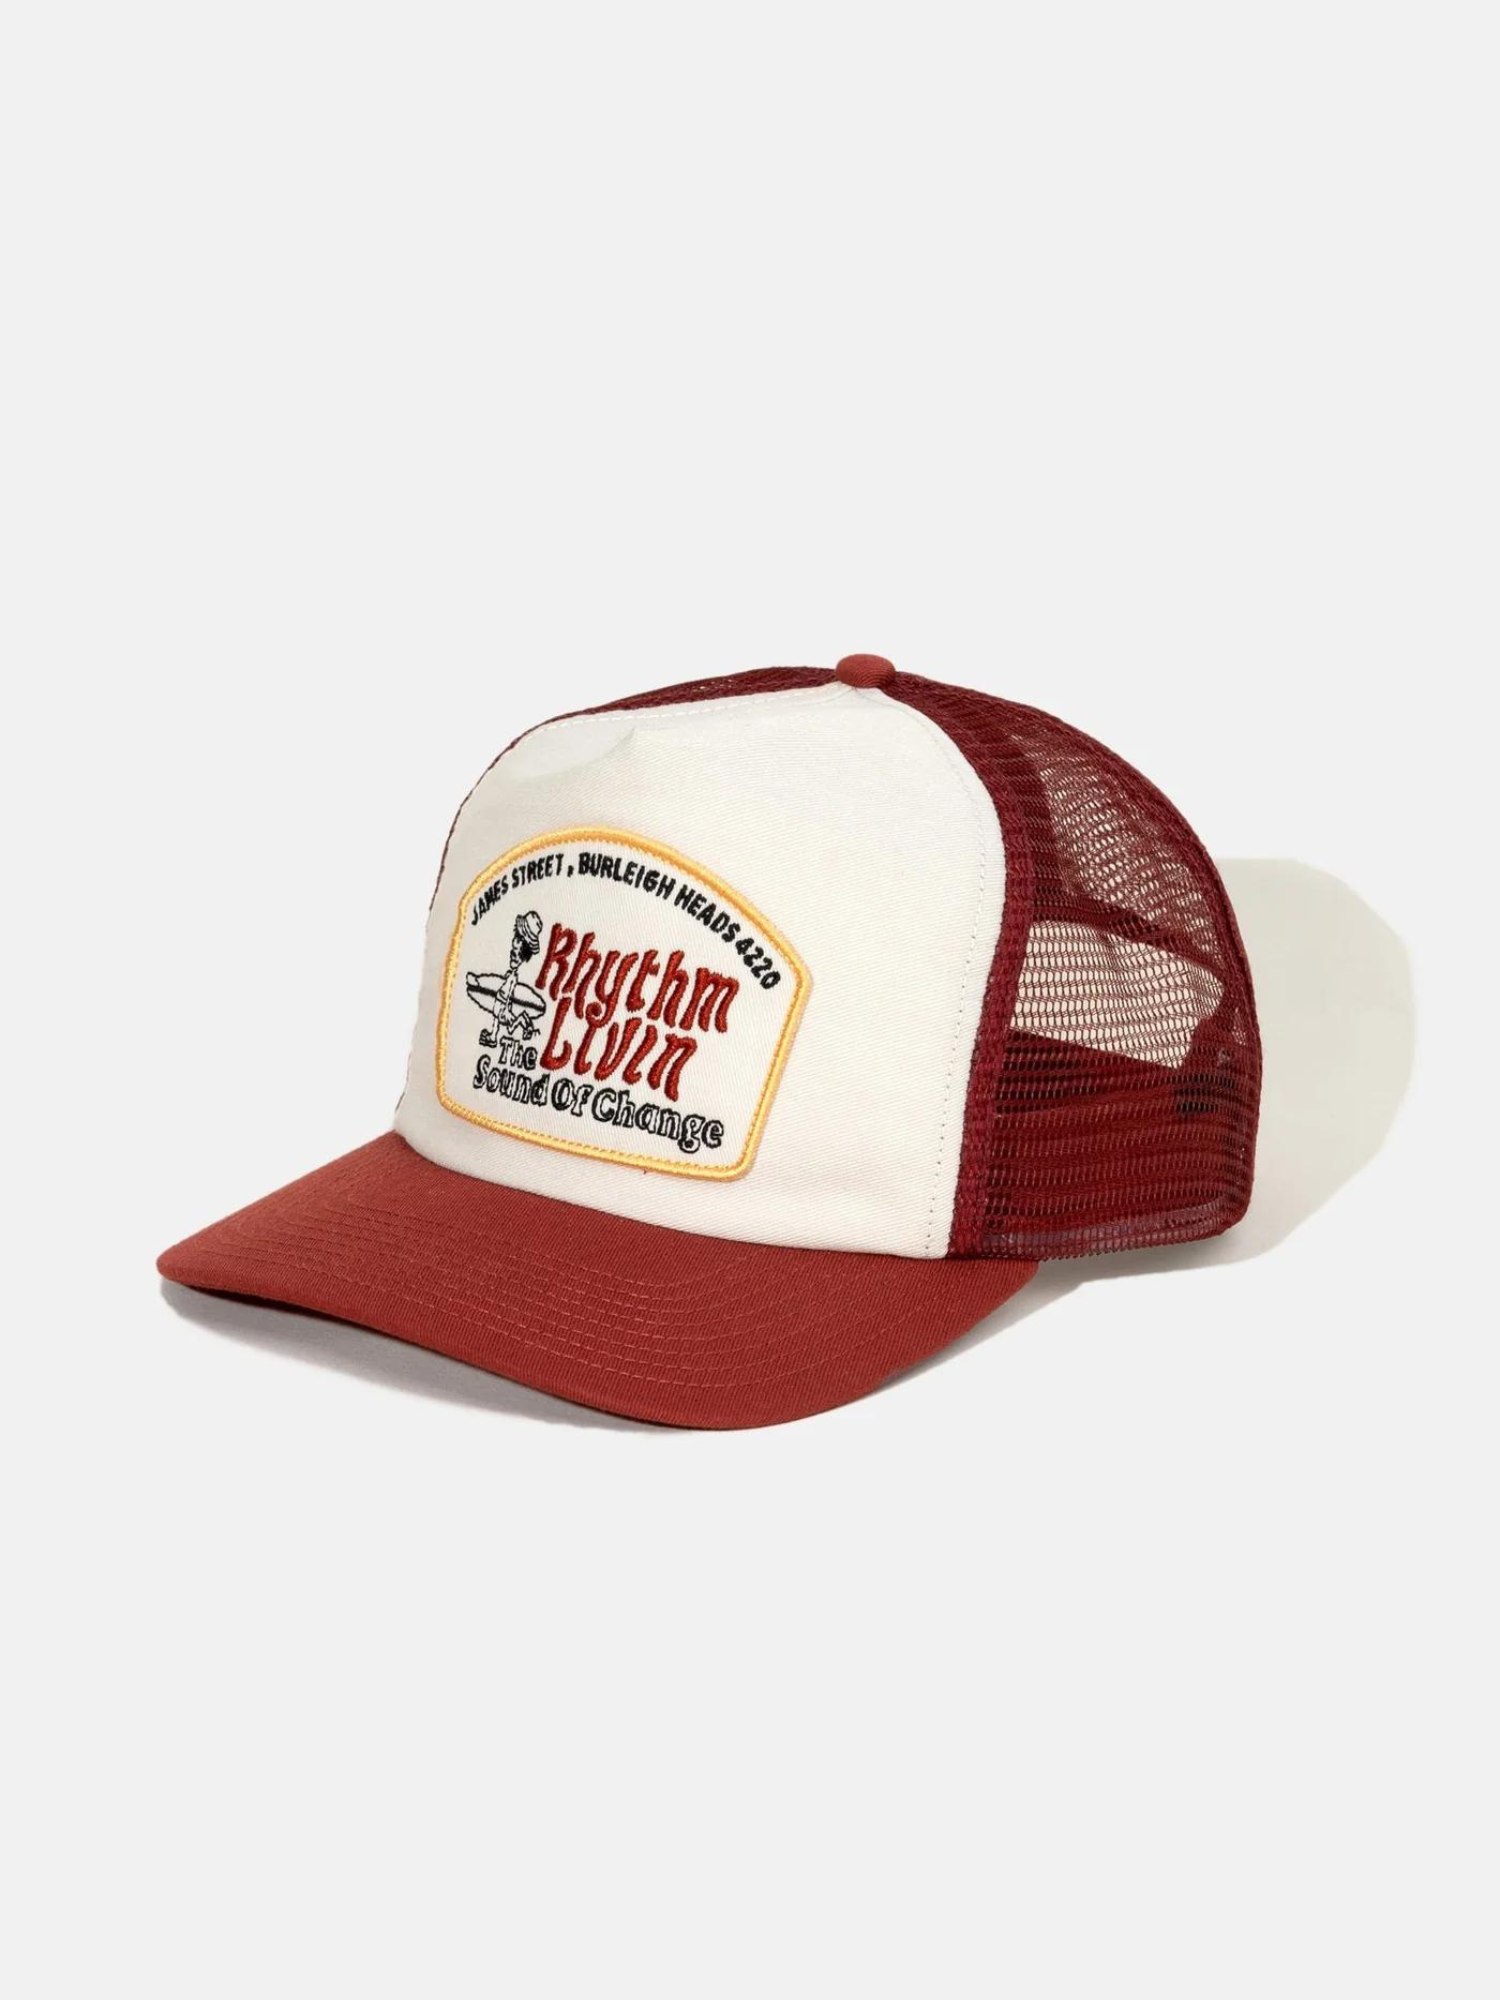 Rhythm Pathway Trucker Cap - Red